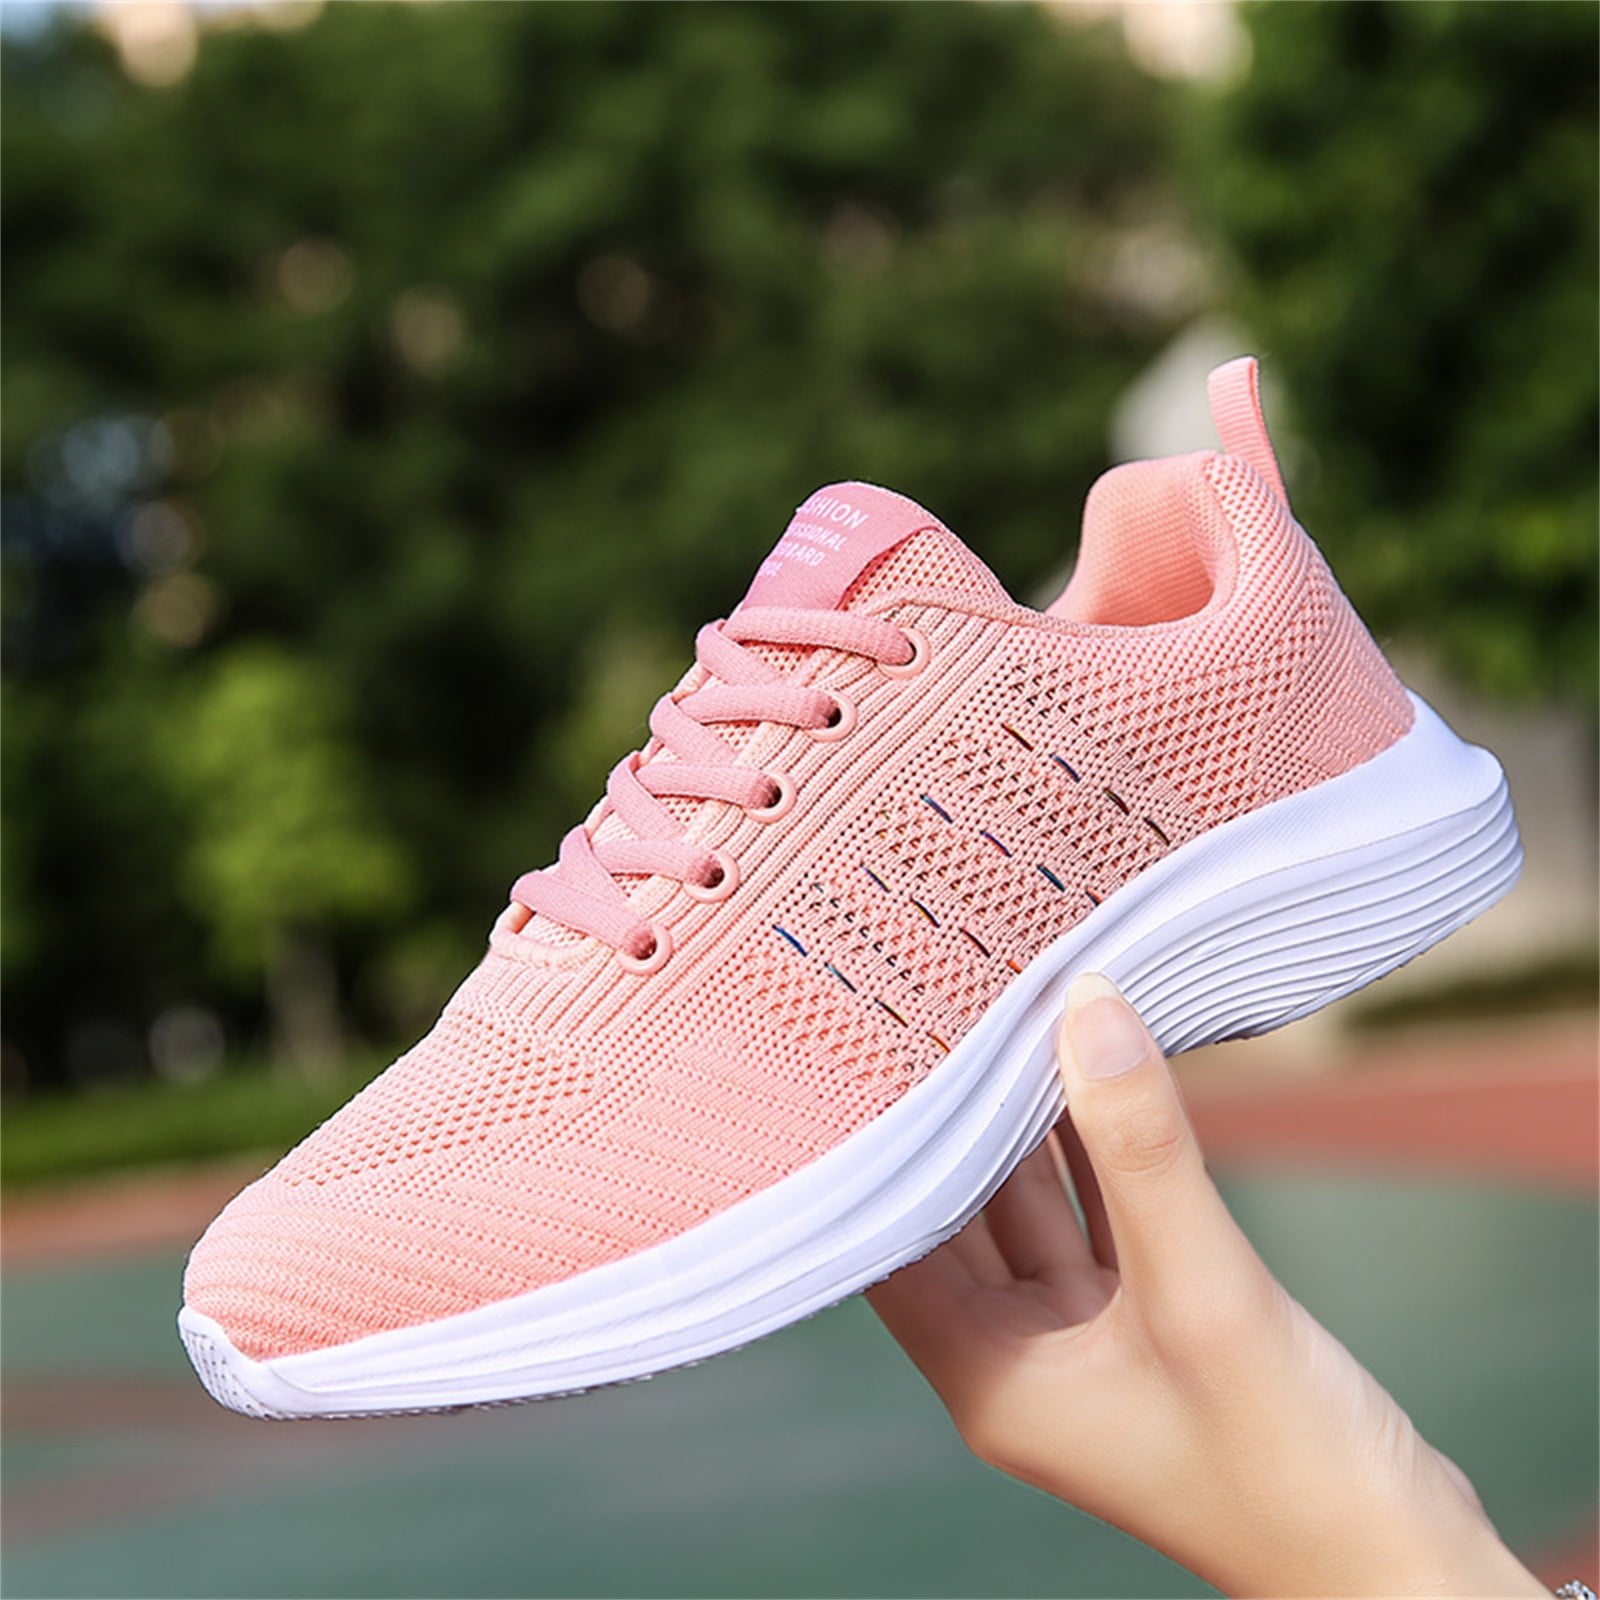 adidas skater shoe women pink white 8 723001 2006 flat sneakers tennis  stripe | eBay